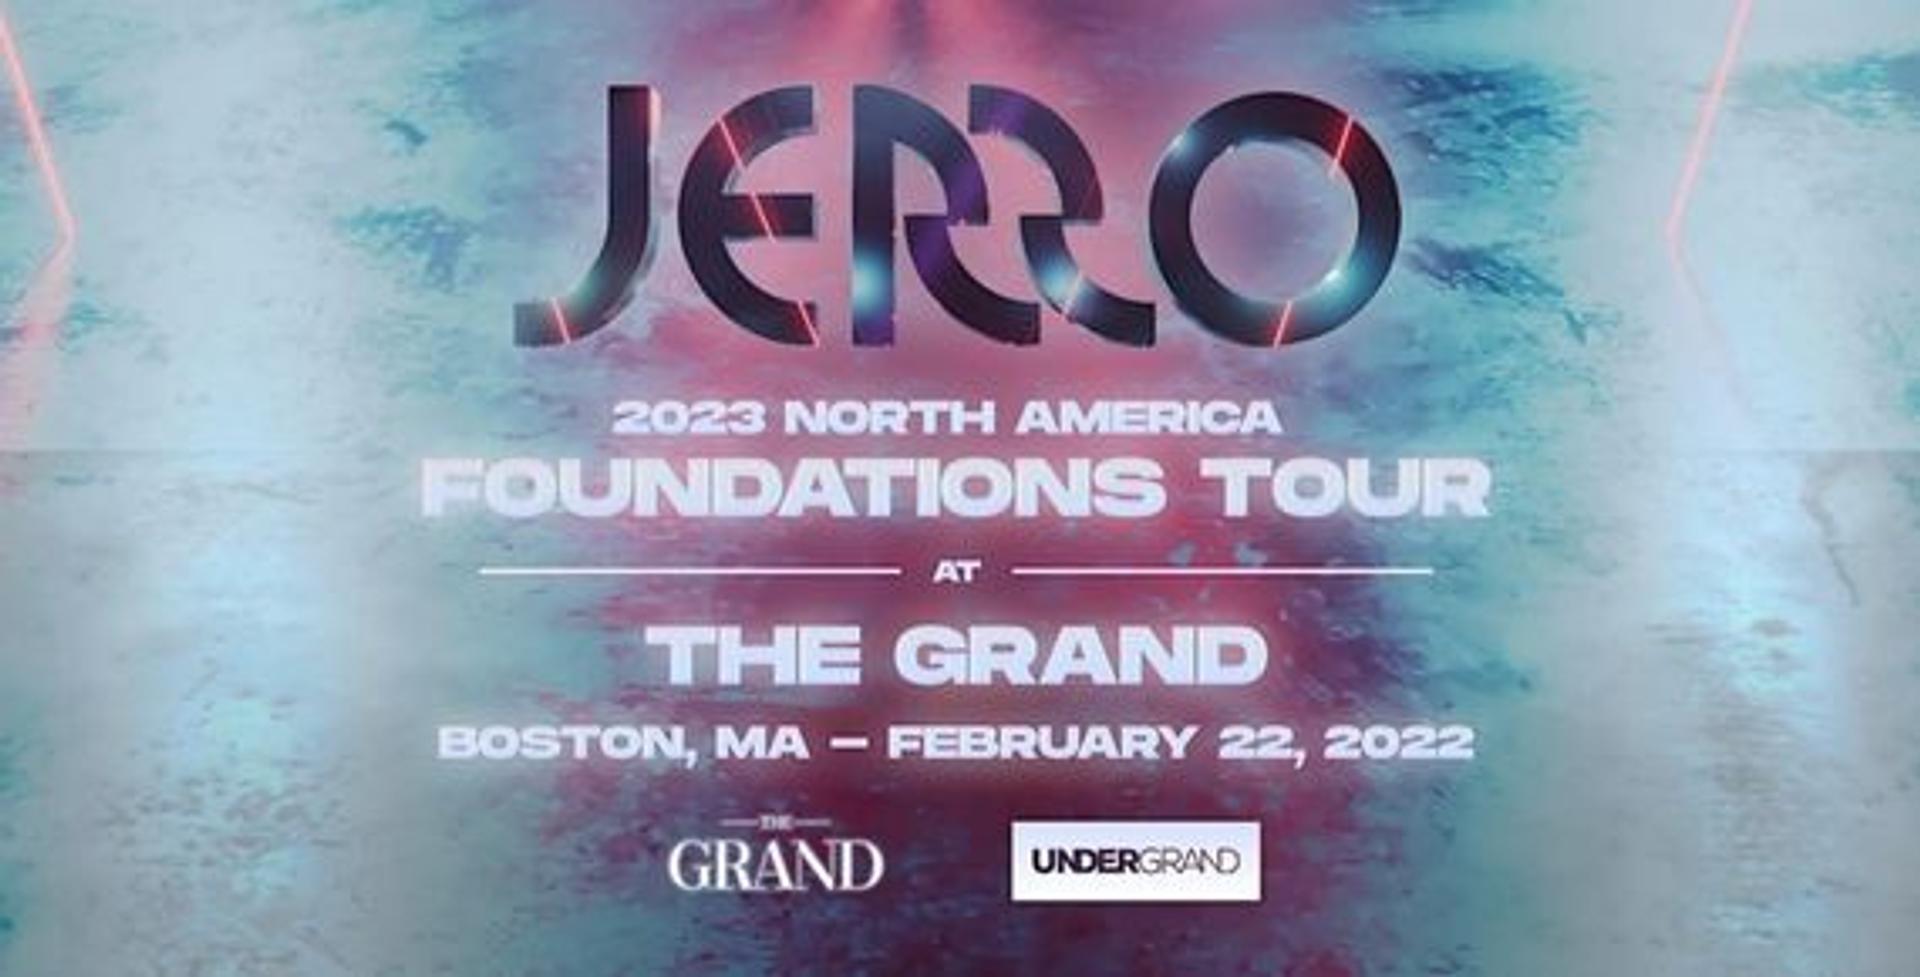 The Grand: Jerro